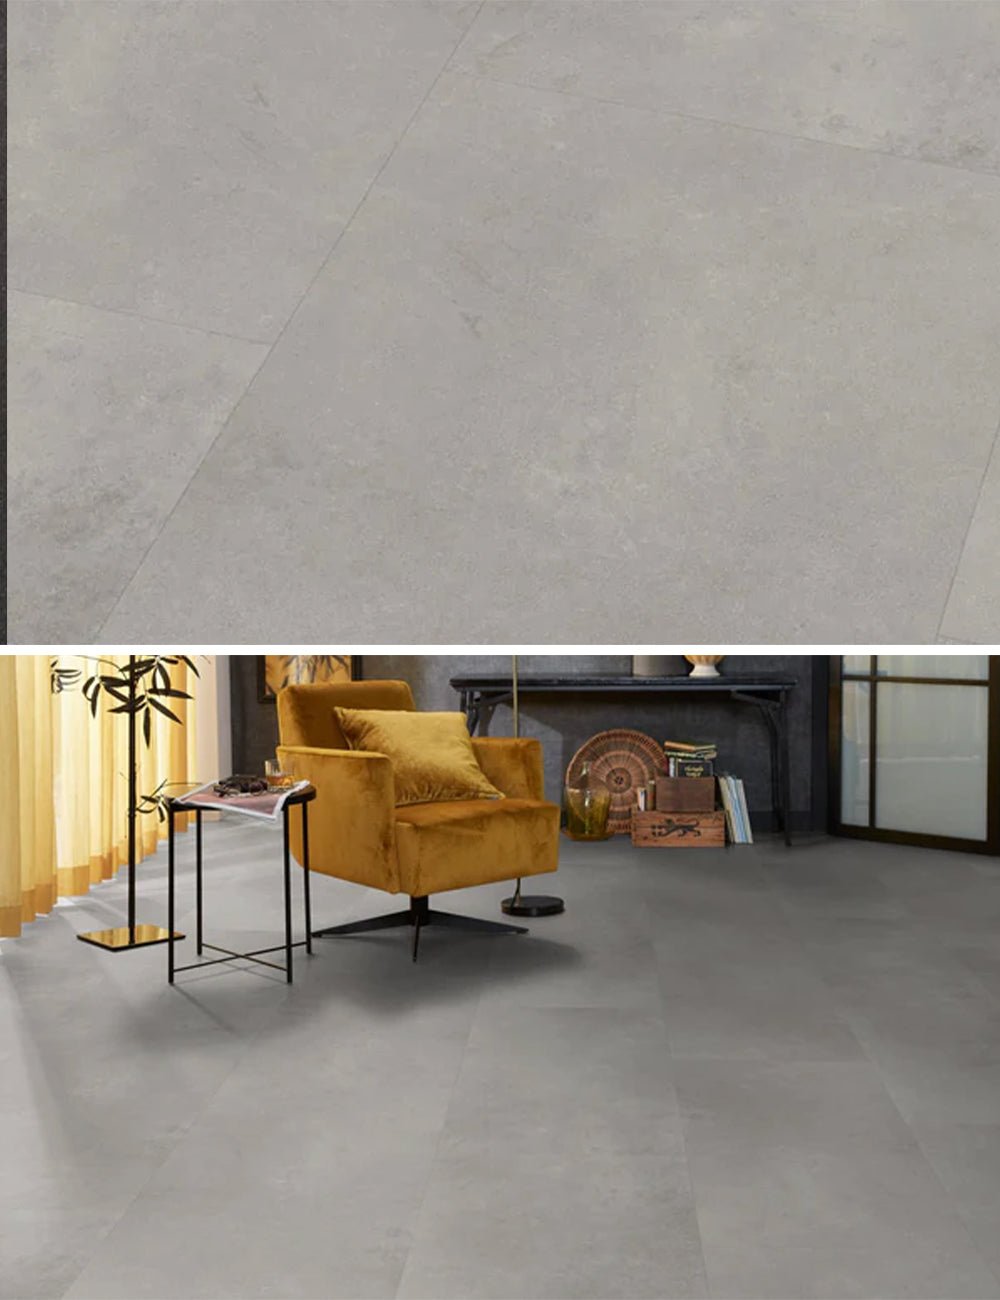 Floorlife Southwark Grey 4113 Tegel Dryback PVC - 91.4 x 45.7 cm - Solza.nl